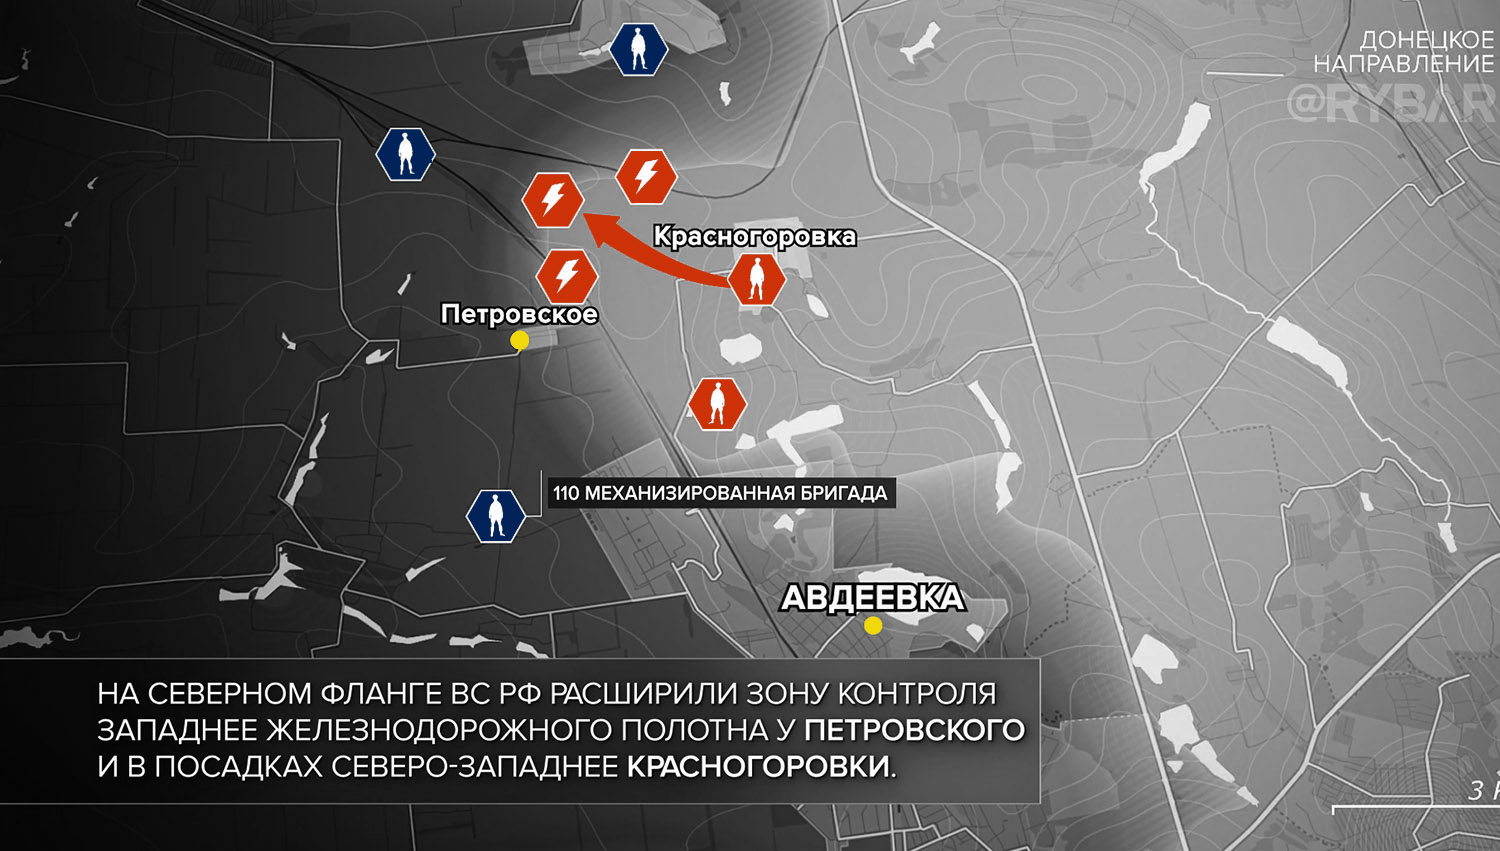 Карта боевых действий на Украине, Донецкое направление, к утру 12.11.23 г. Карта СВО от «Рыбарь».